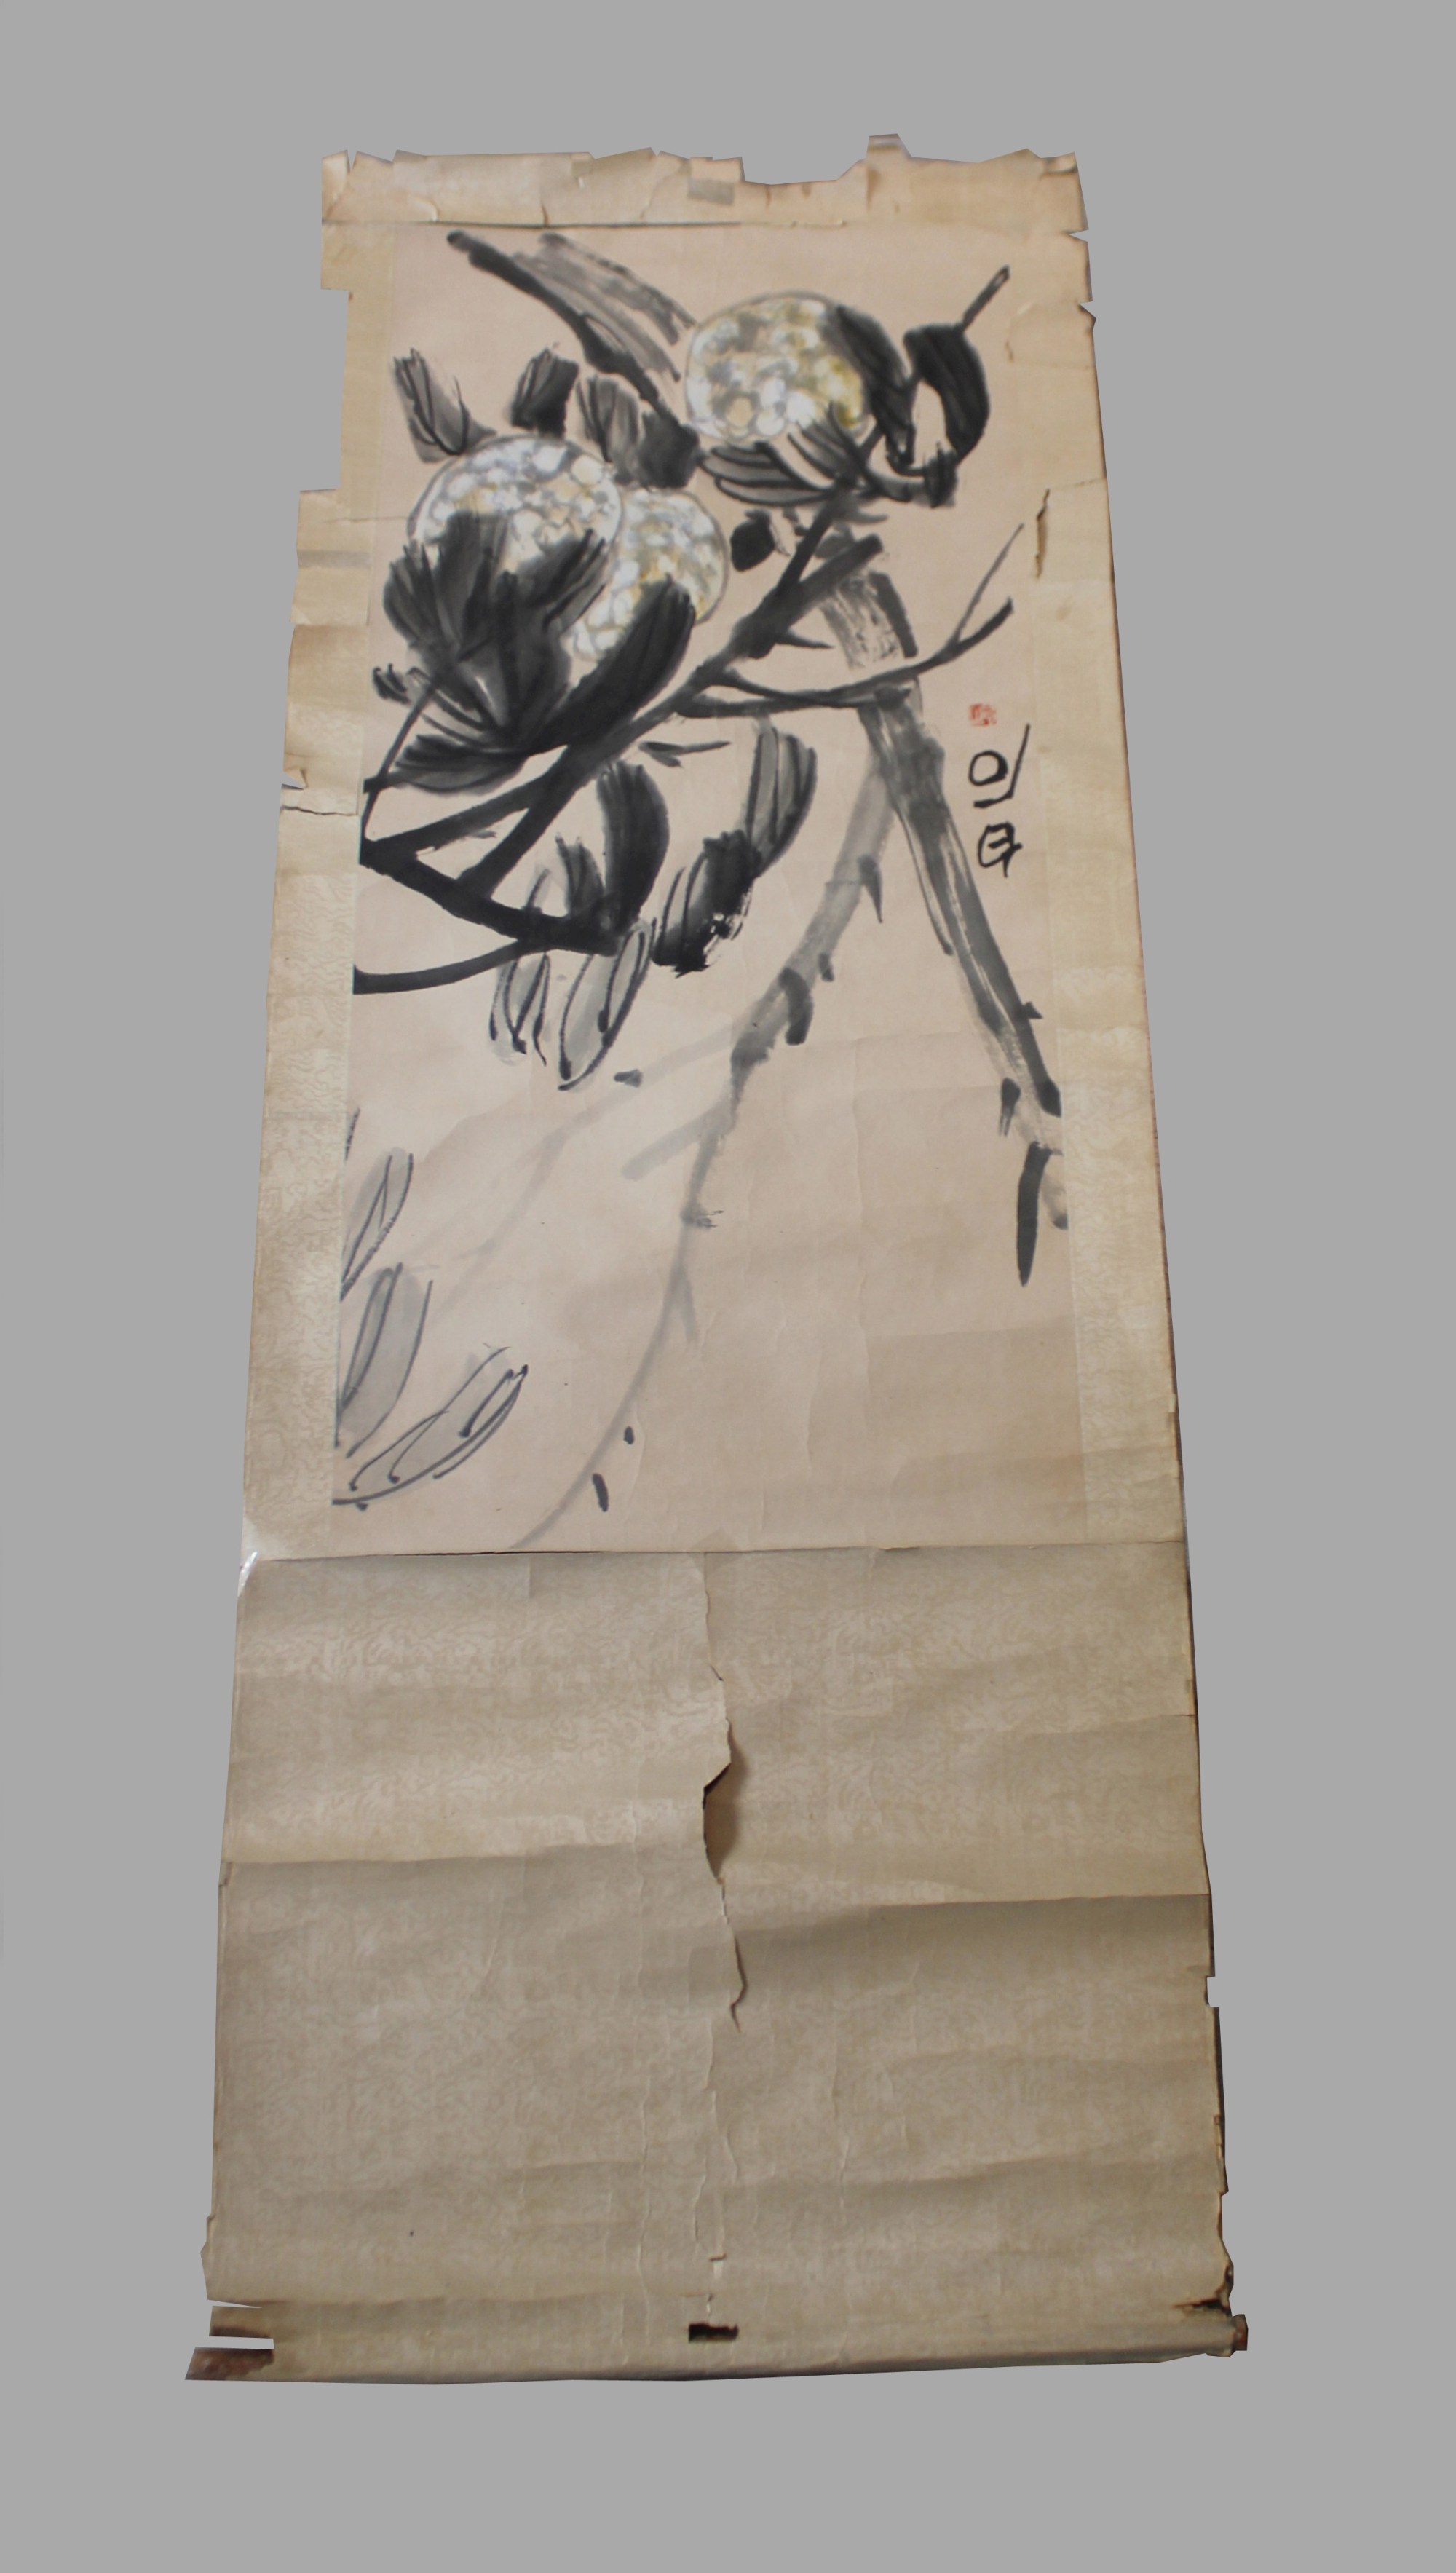 Rollbild, China, um 1900, Pflanzendarstellung mit Inschrift. H.: 140,5 cm, B.: 53 cm.